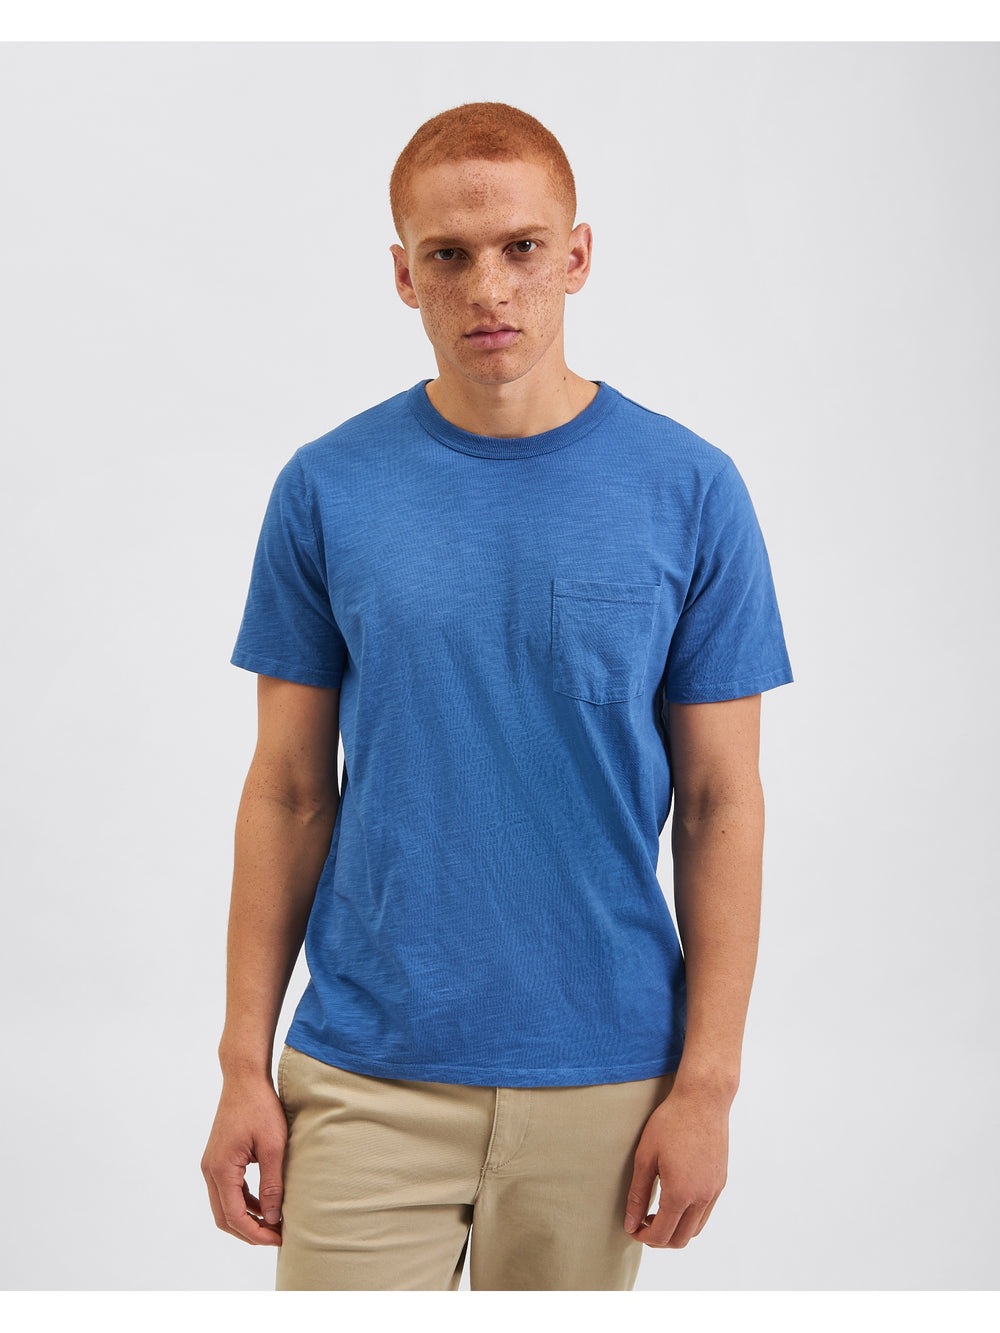 Garment Dye Beatnik Short-Sleeve T-Shirt - Mid Blue